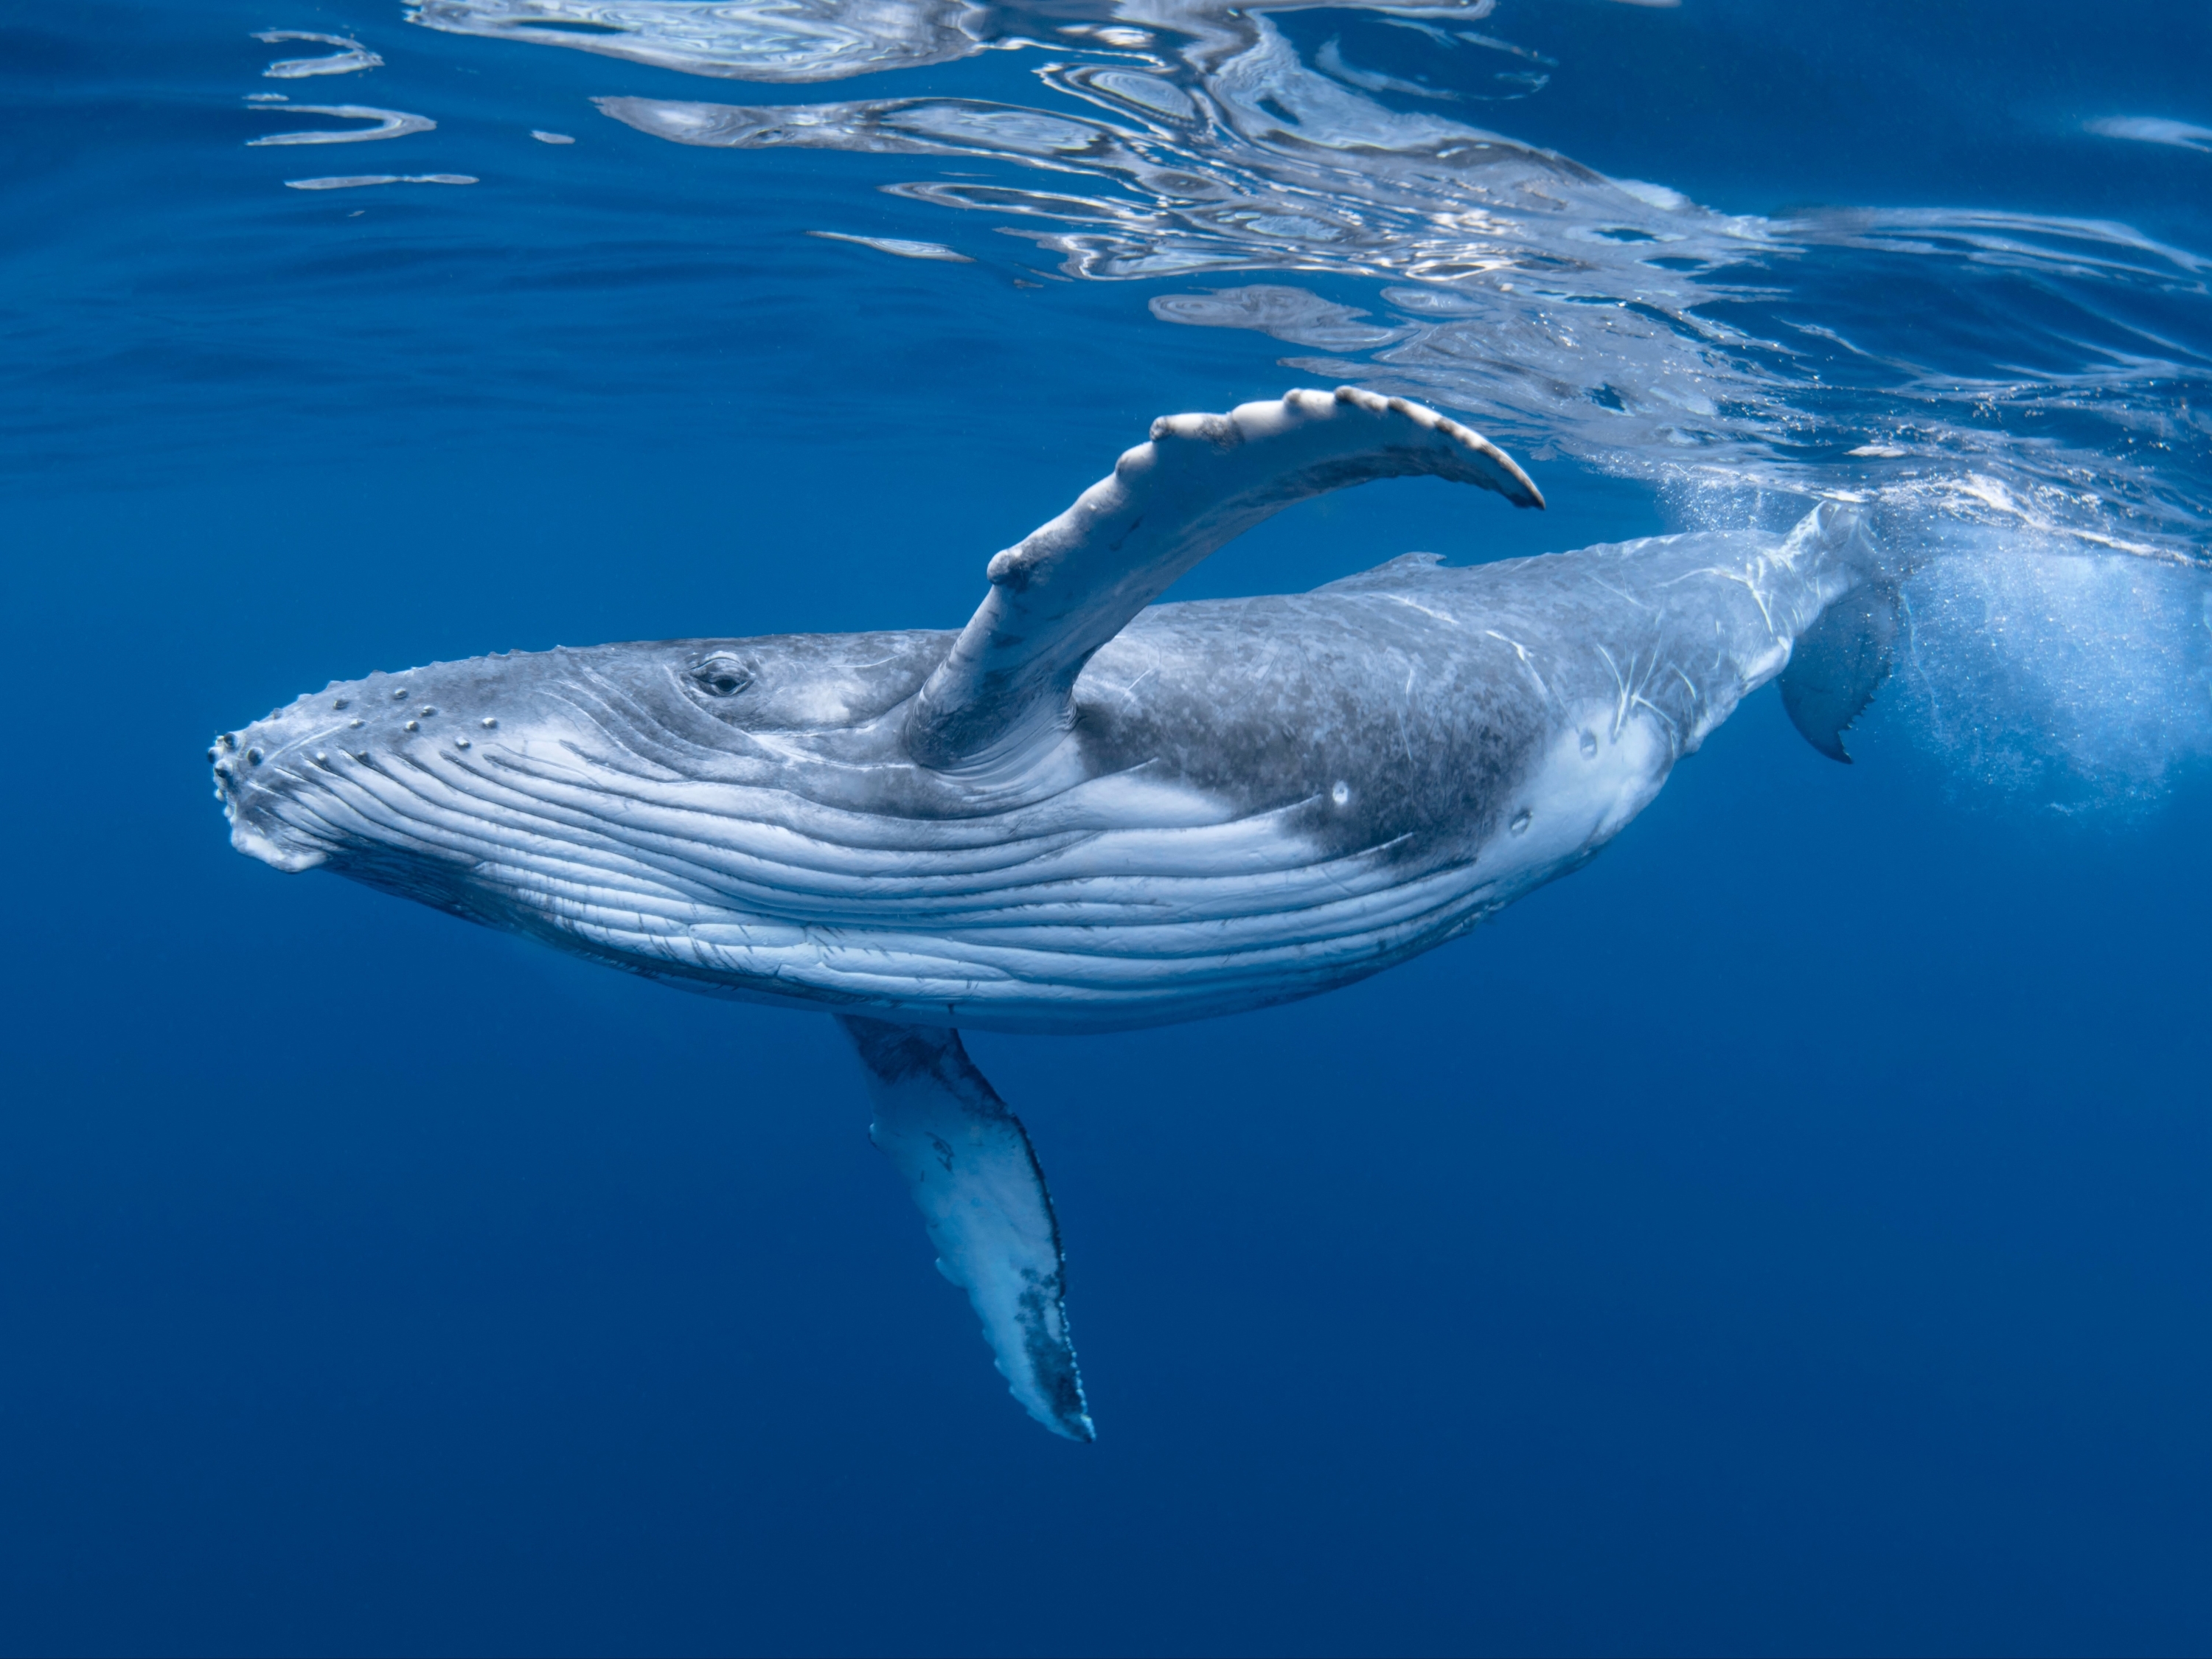   Ocean wallpaper Whale Ocean animals